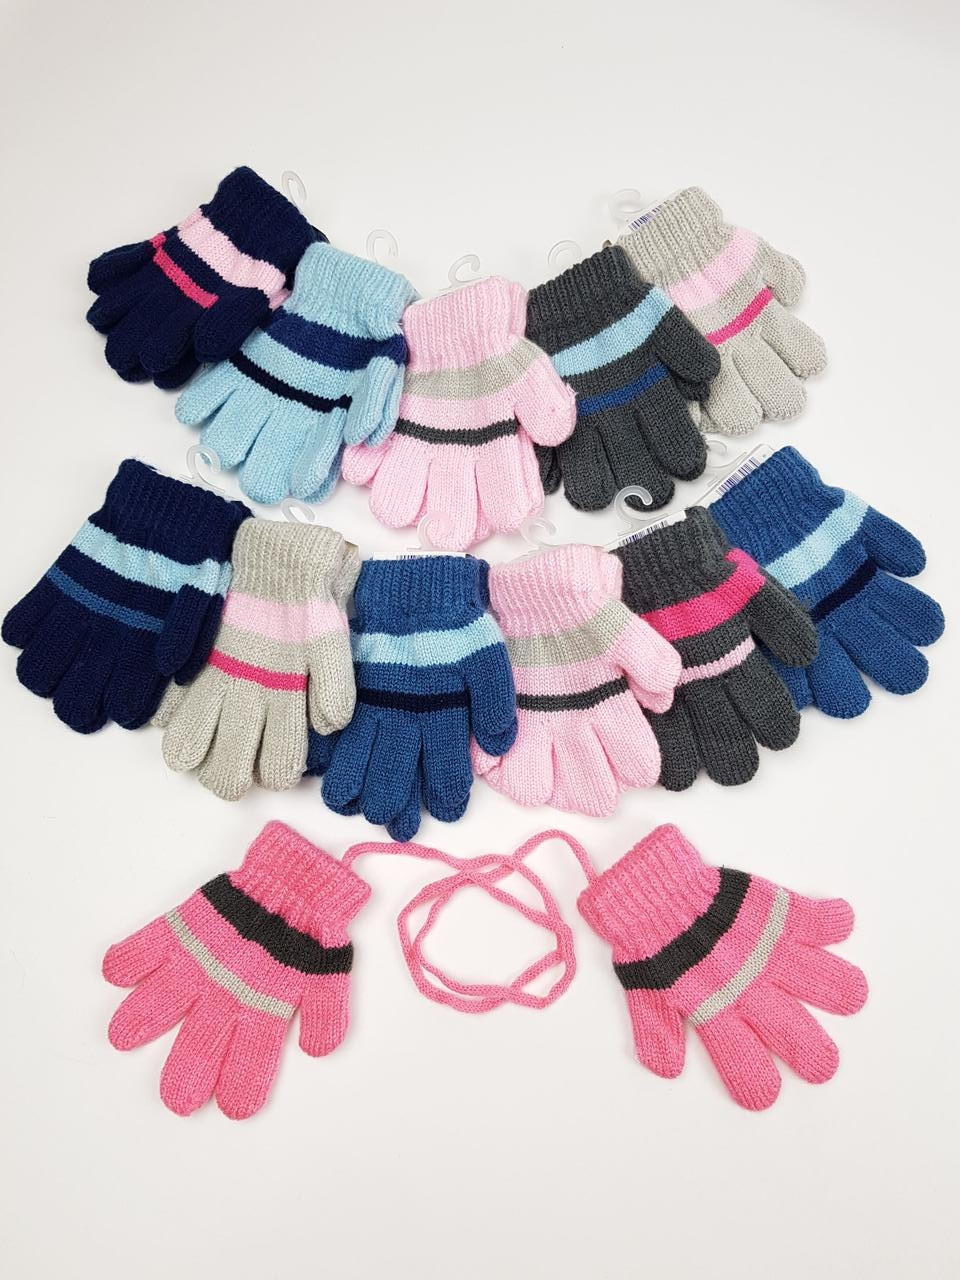 Дитячі польські рукавички для дівчат р.11см (6-12 міс) (12шт. набір)